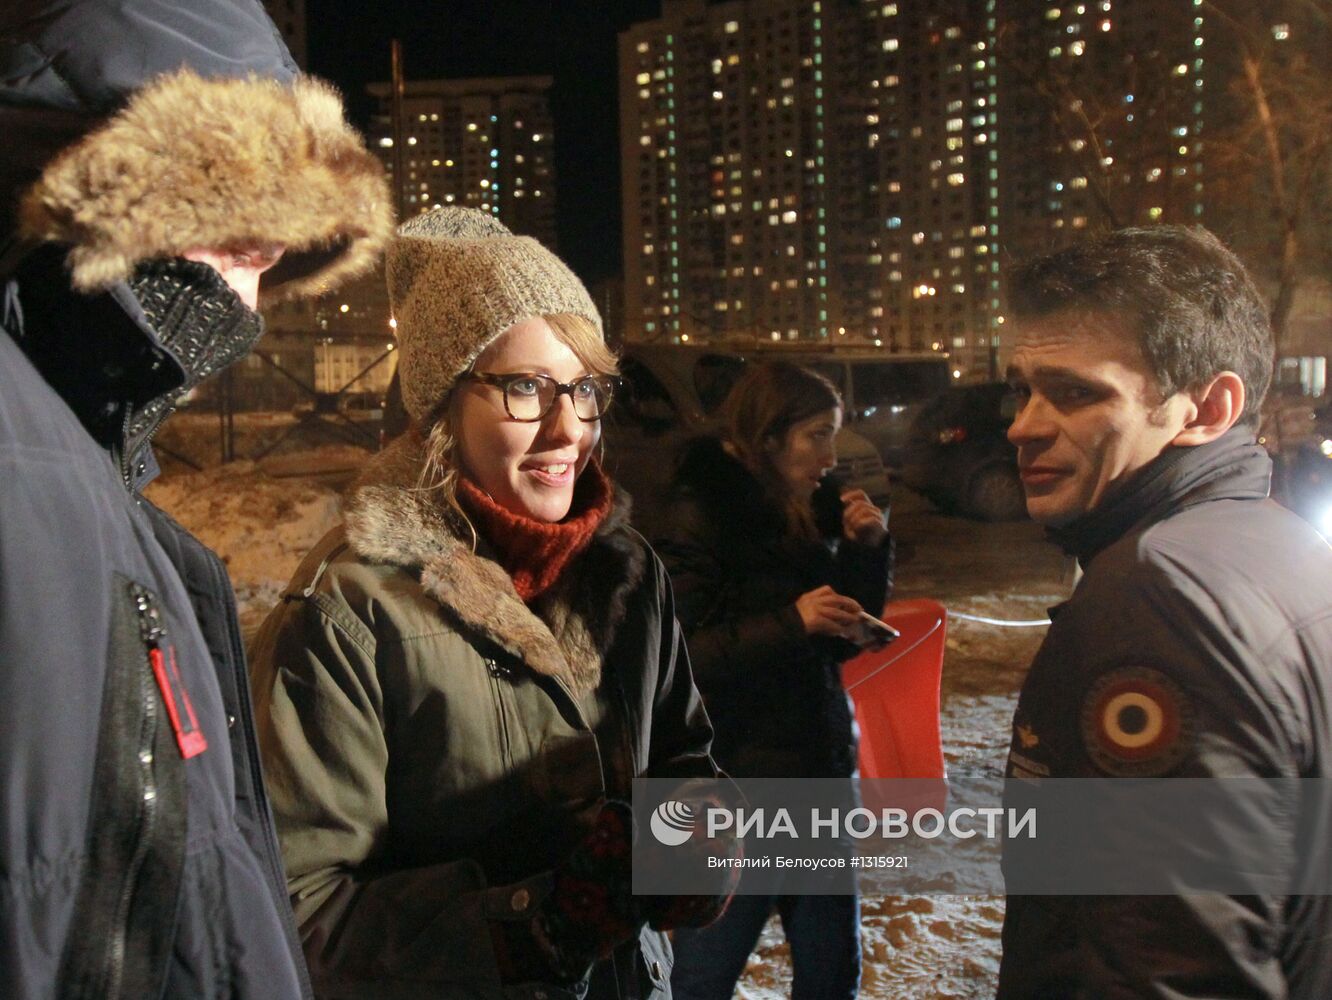 Участники акции "Марш свободы" освобождены из ОВД "Текстильщики"